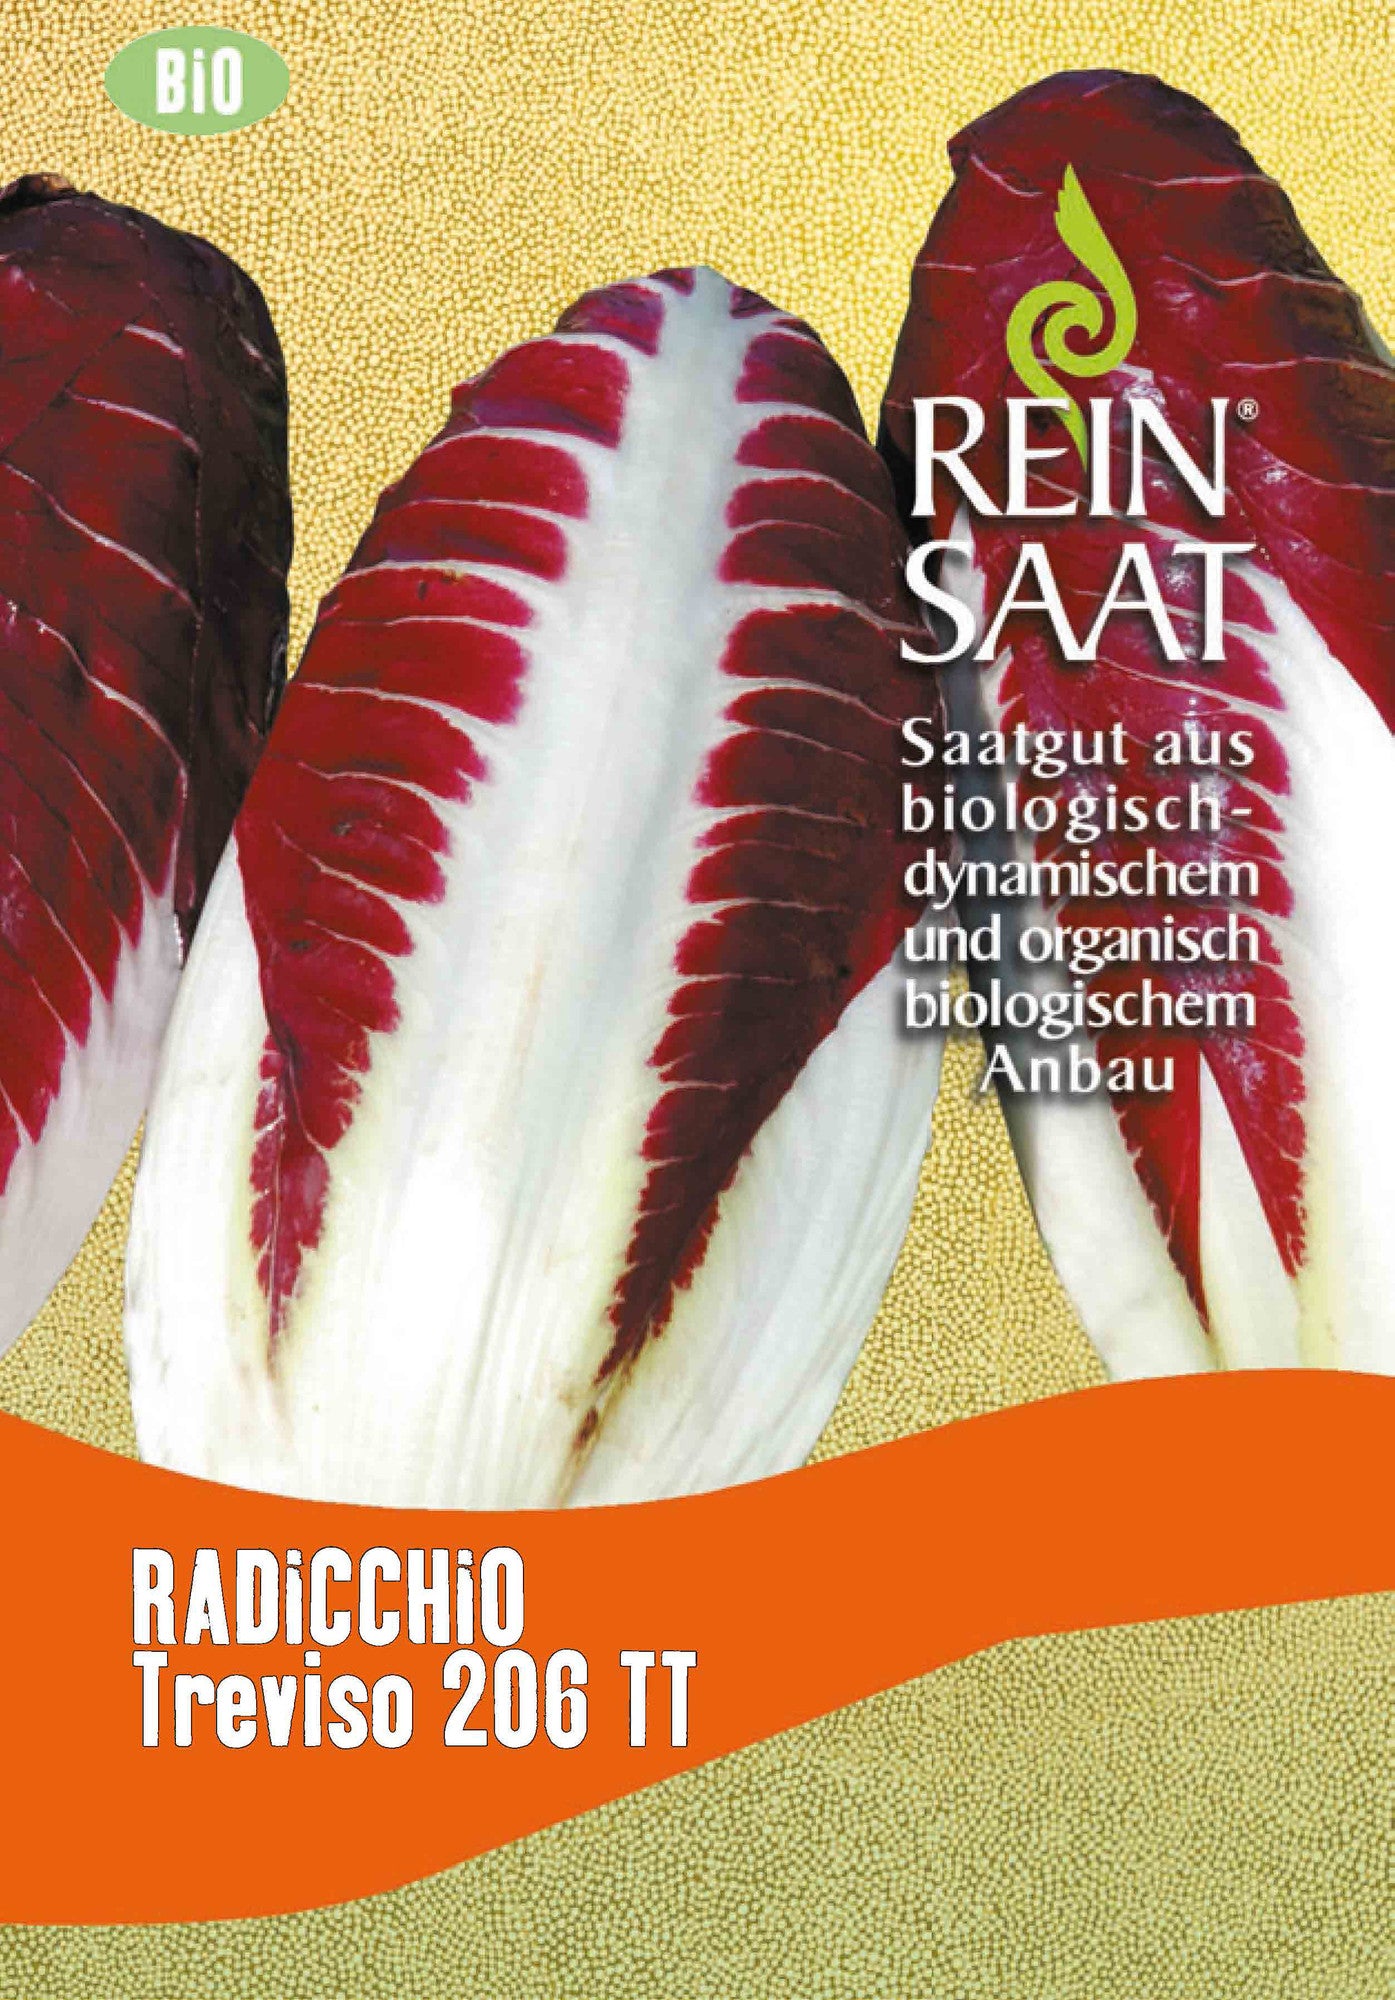 Radicchio Treviso 206 TT | BIO Salatsamen von Reinsaat